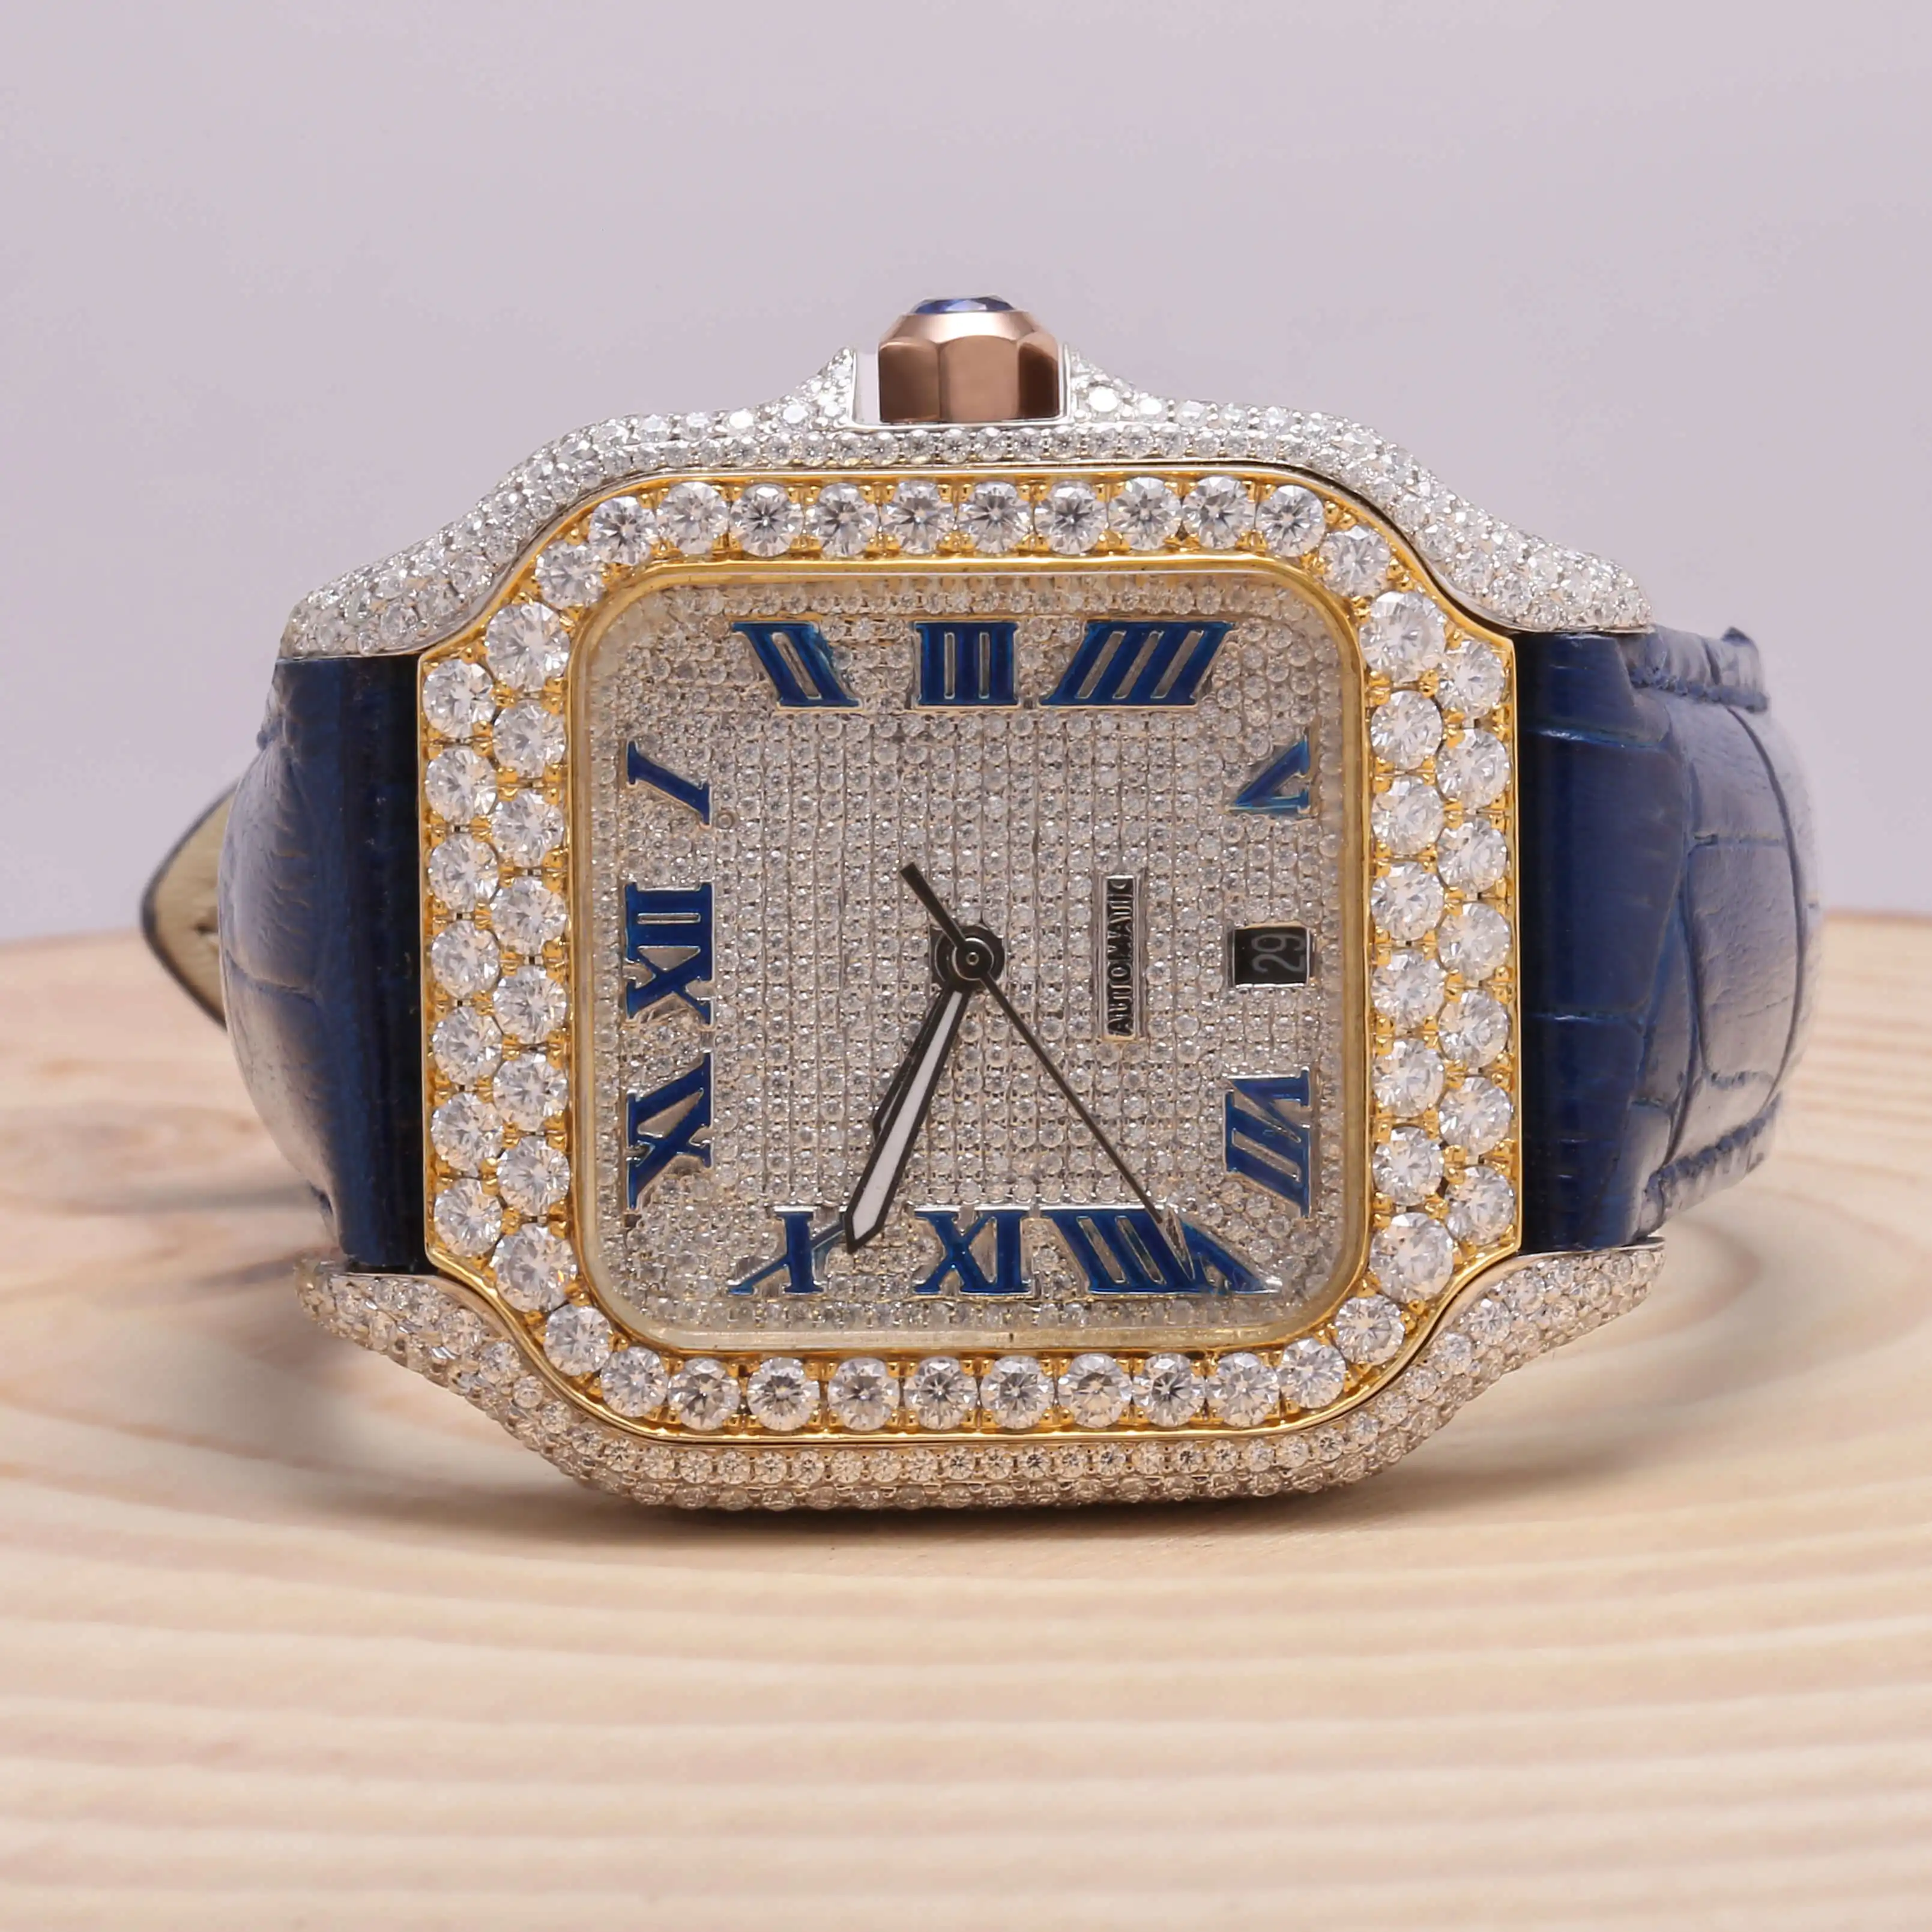 Jam tangan mekanis VVS Moissanite Dial coklat setengah es/menampilkan kalender kualitas terbaik untuk jam tangan berlian trendsetter